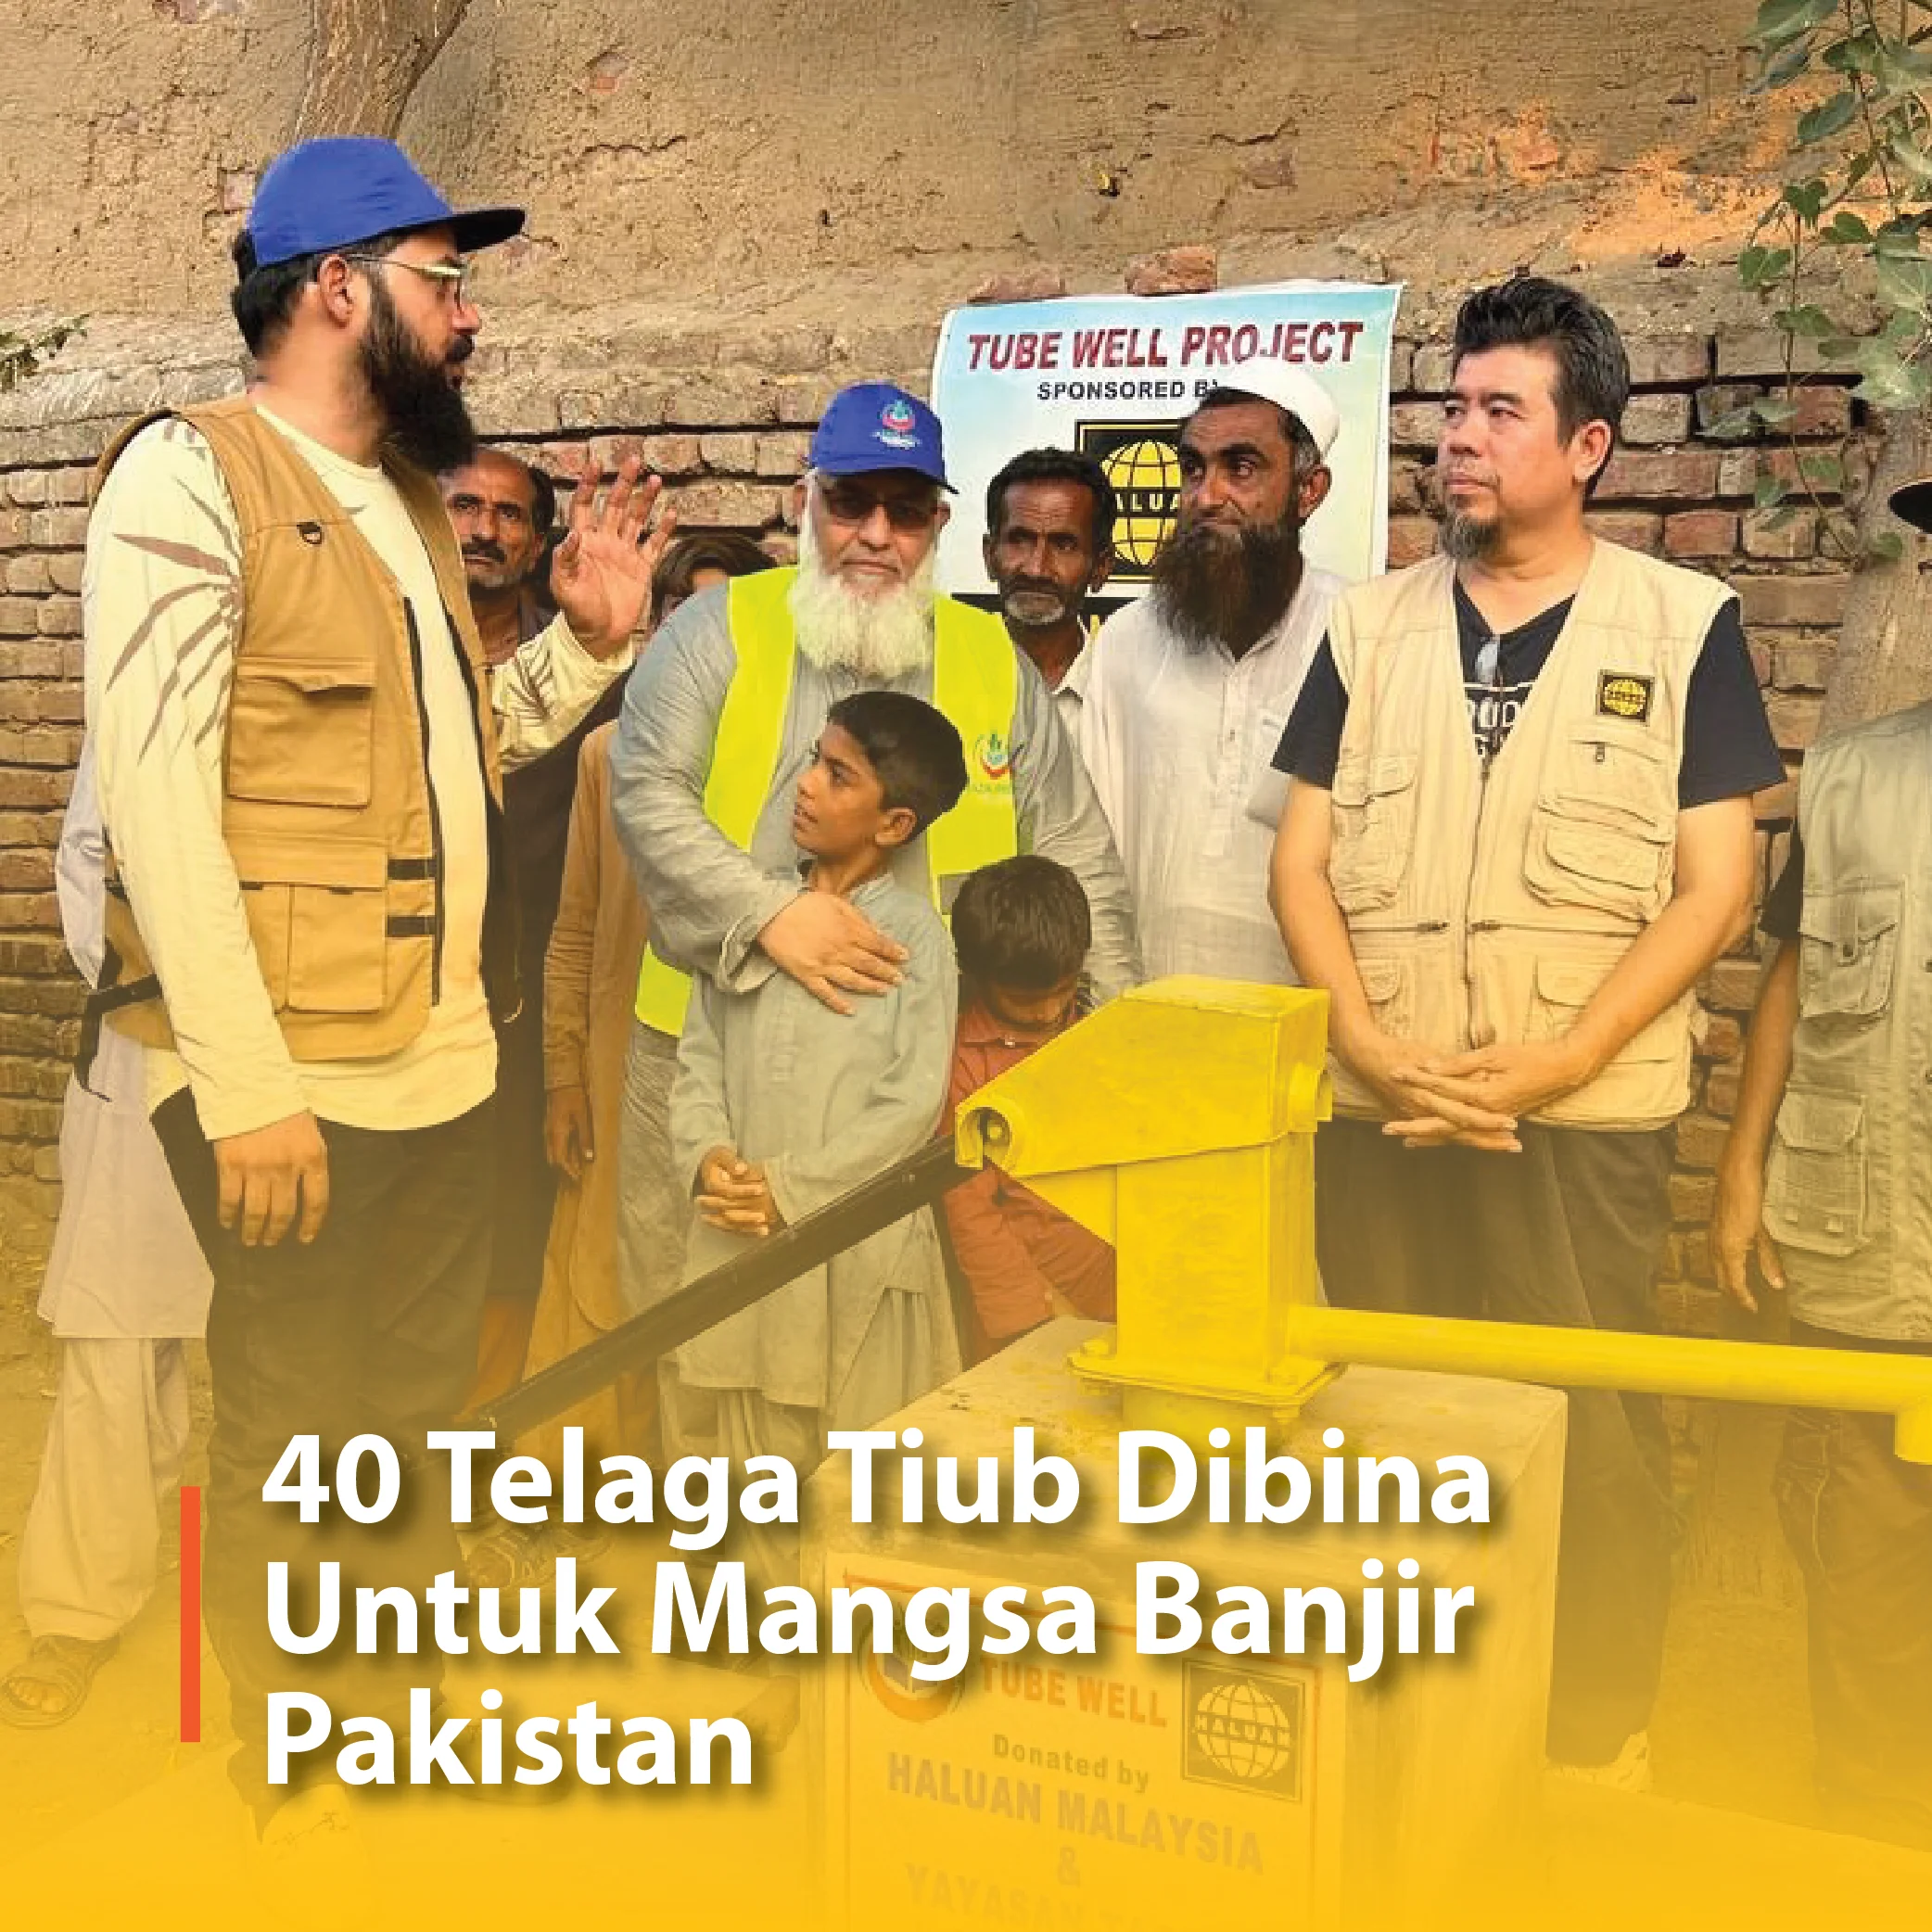 40 Telaga Tiub Dibina Untuk Mangsa Banjir Pakistan